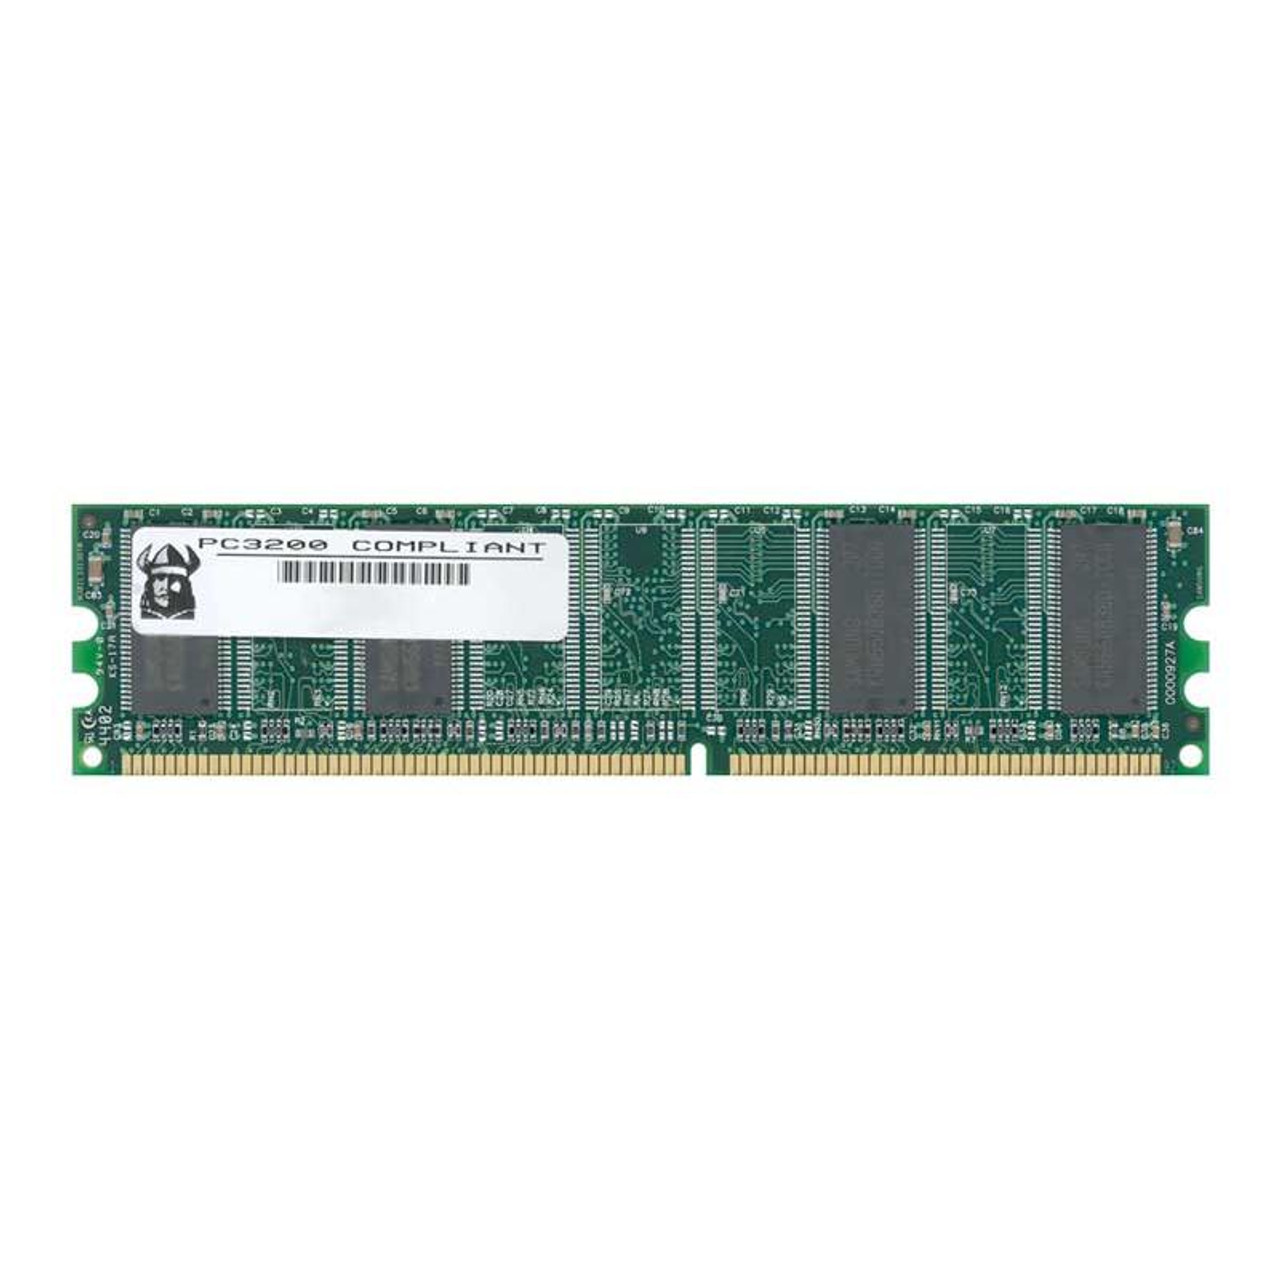 GW3200DDR/256 Viking 256MB PC3200 DDR-400MHz non-ECC Unbuffered CL3 184-Pin DIMM Memory Module